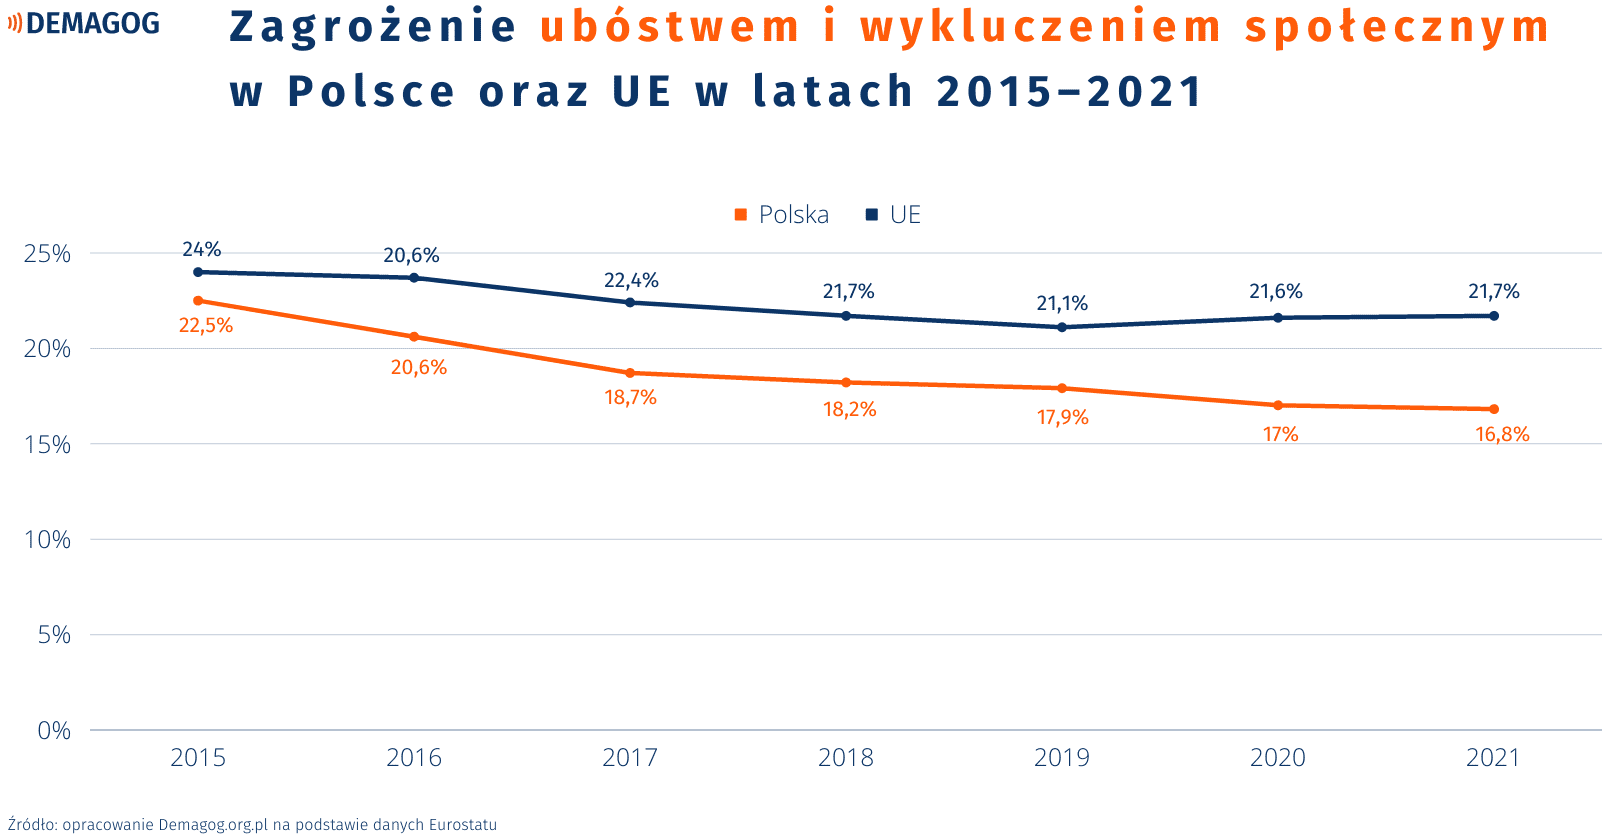 Wykres liniowy prezentujący informacje o zagrożeniu ubóstwem lub wykluczeniem społecznym w Polsce na tle Unii Europejskiej